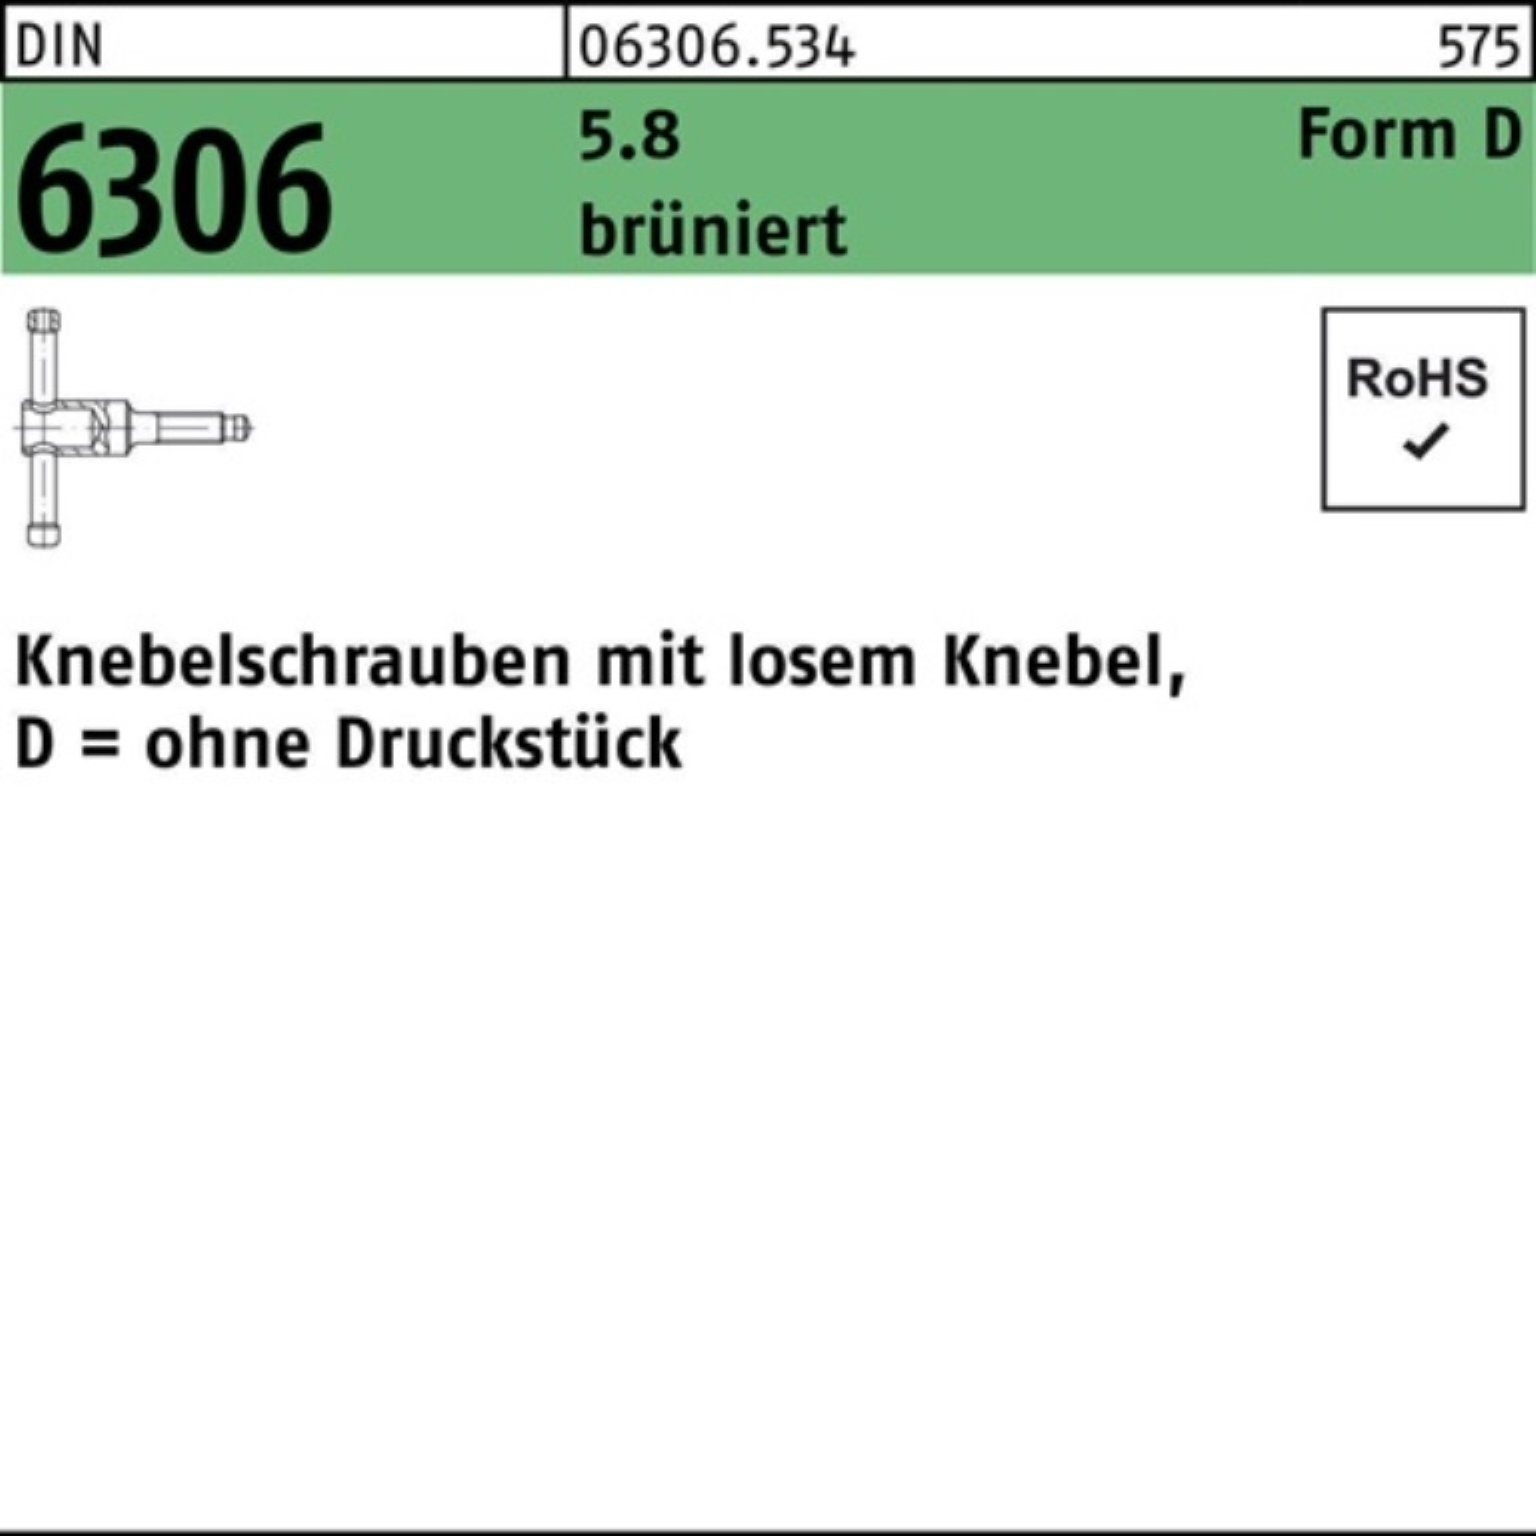 Reyher Schraube 100er Pack Knebelschraube DIN 6306 losen Knebel DM 16x 55 5.8 brünier